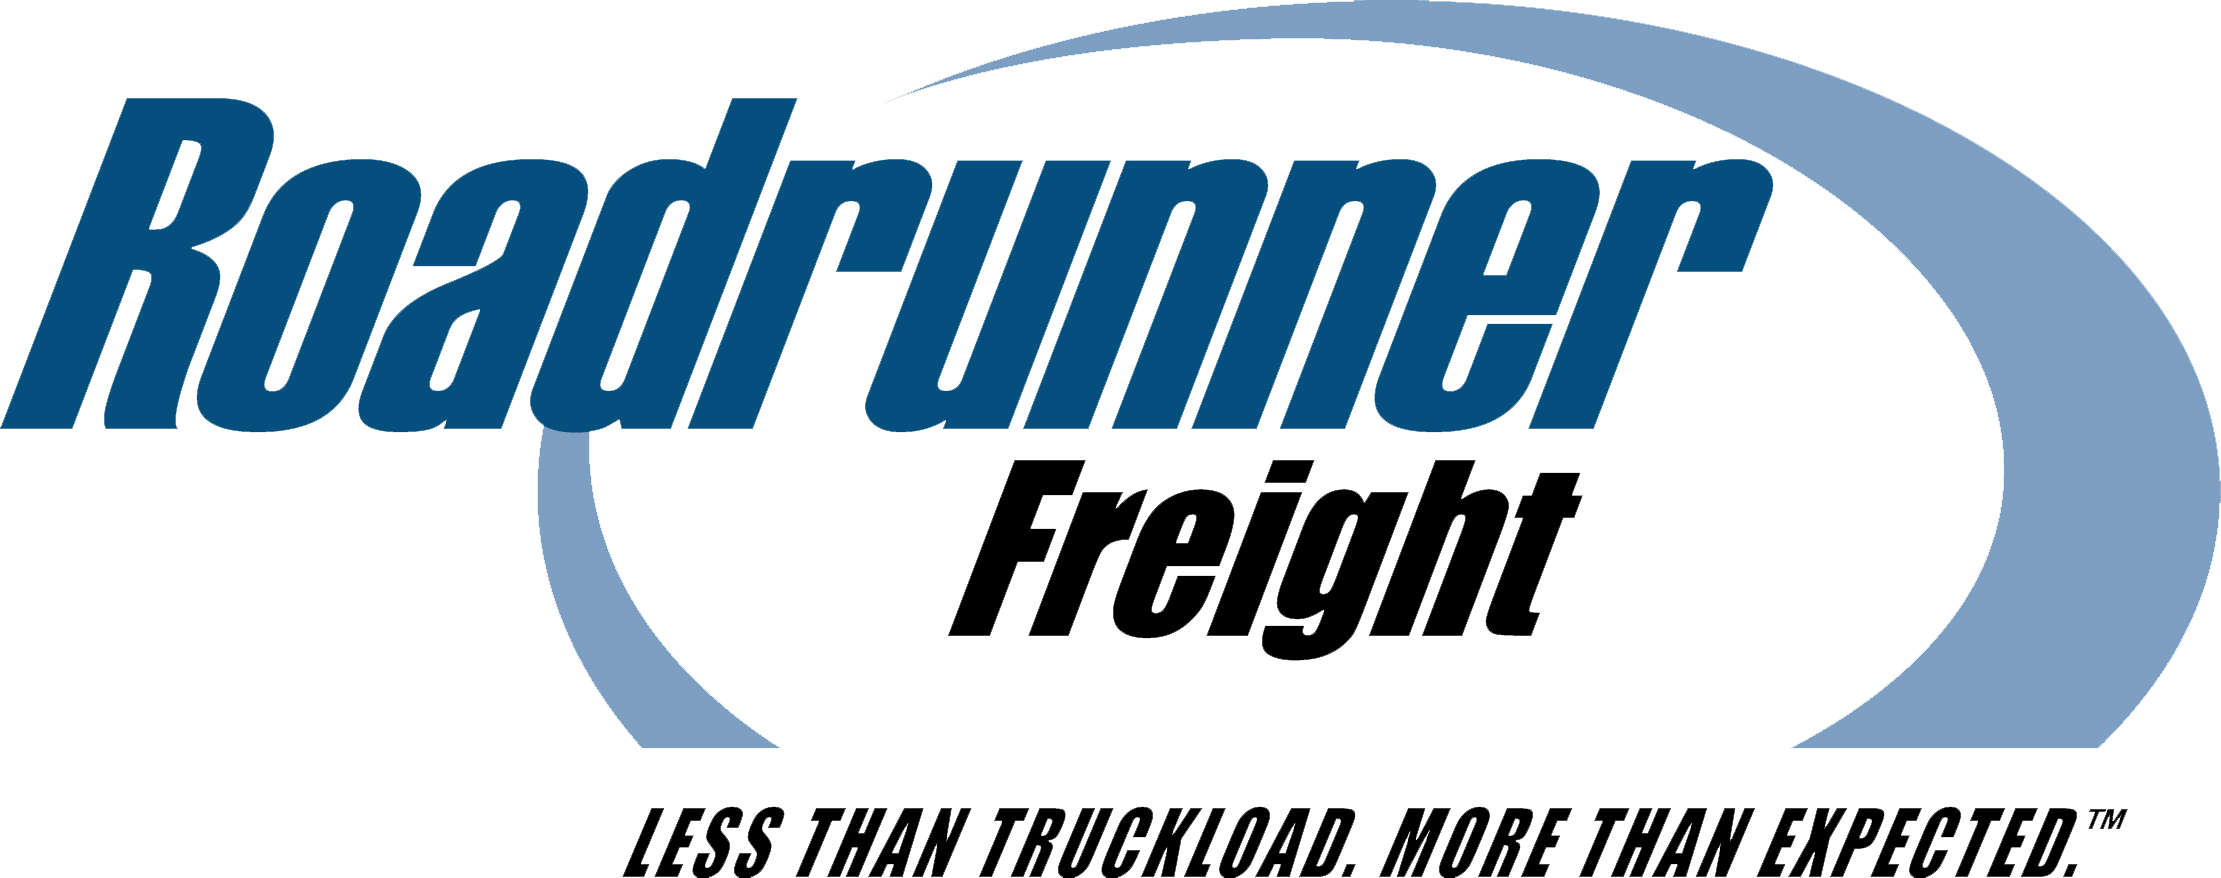 Freight Logo - Roadrunner Freight Logo Transparent - Roadrunner Transportation Systems